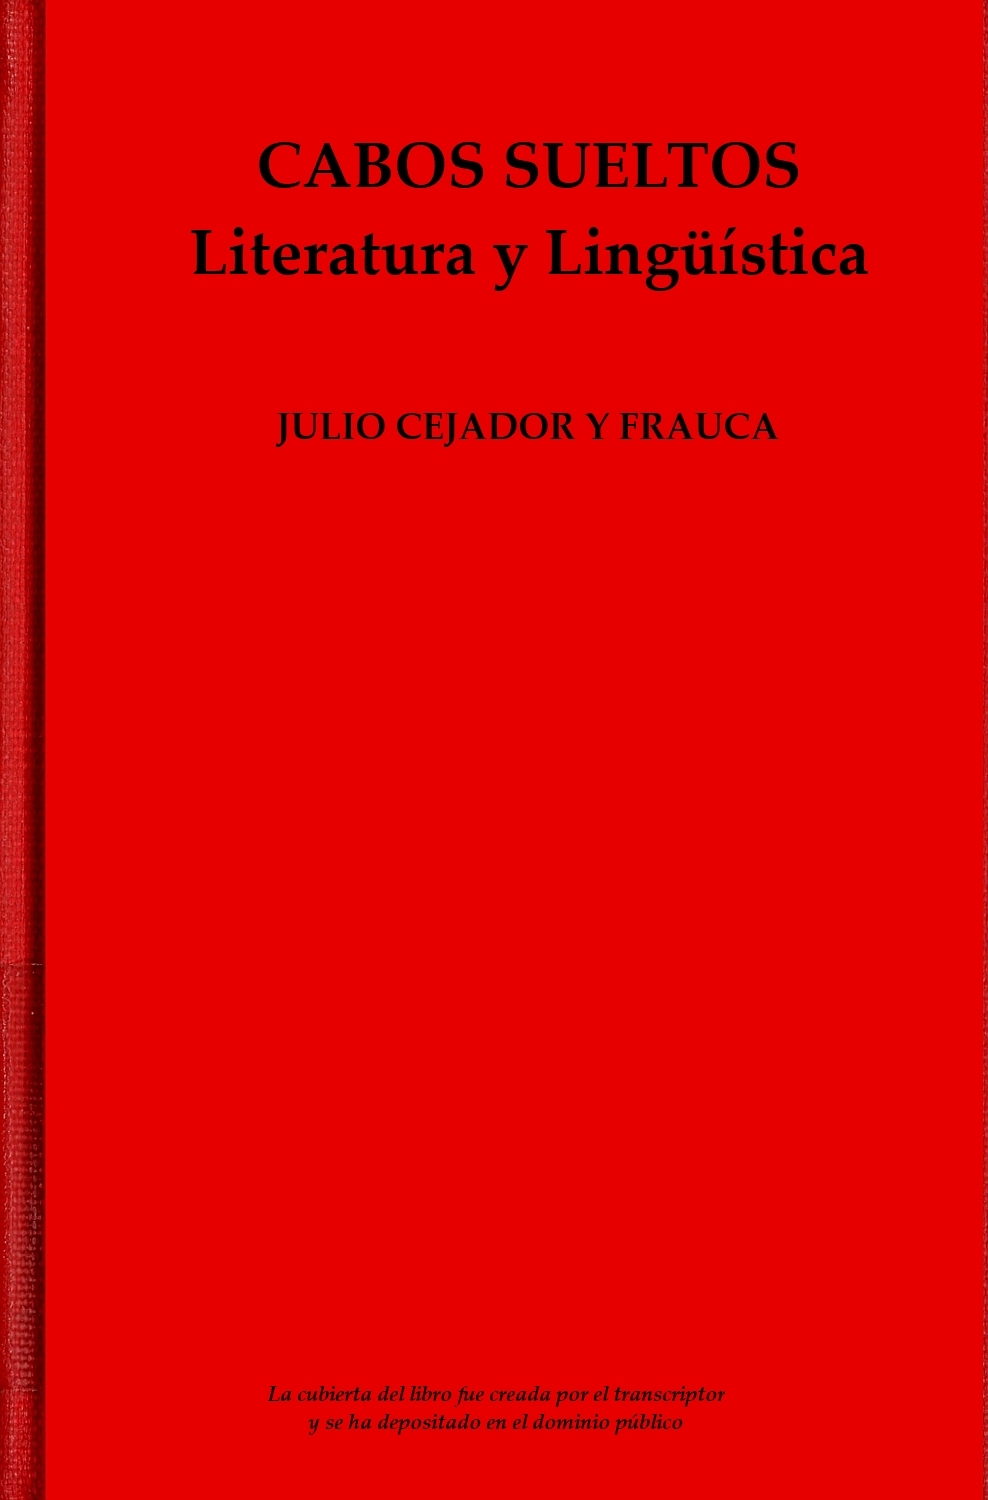 Elementary school Rich man Conversational Cabos Sueltos, by Julio Cejador y Frauca—A Project Gutenberg eBook